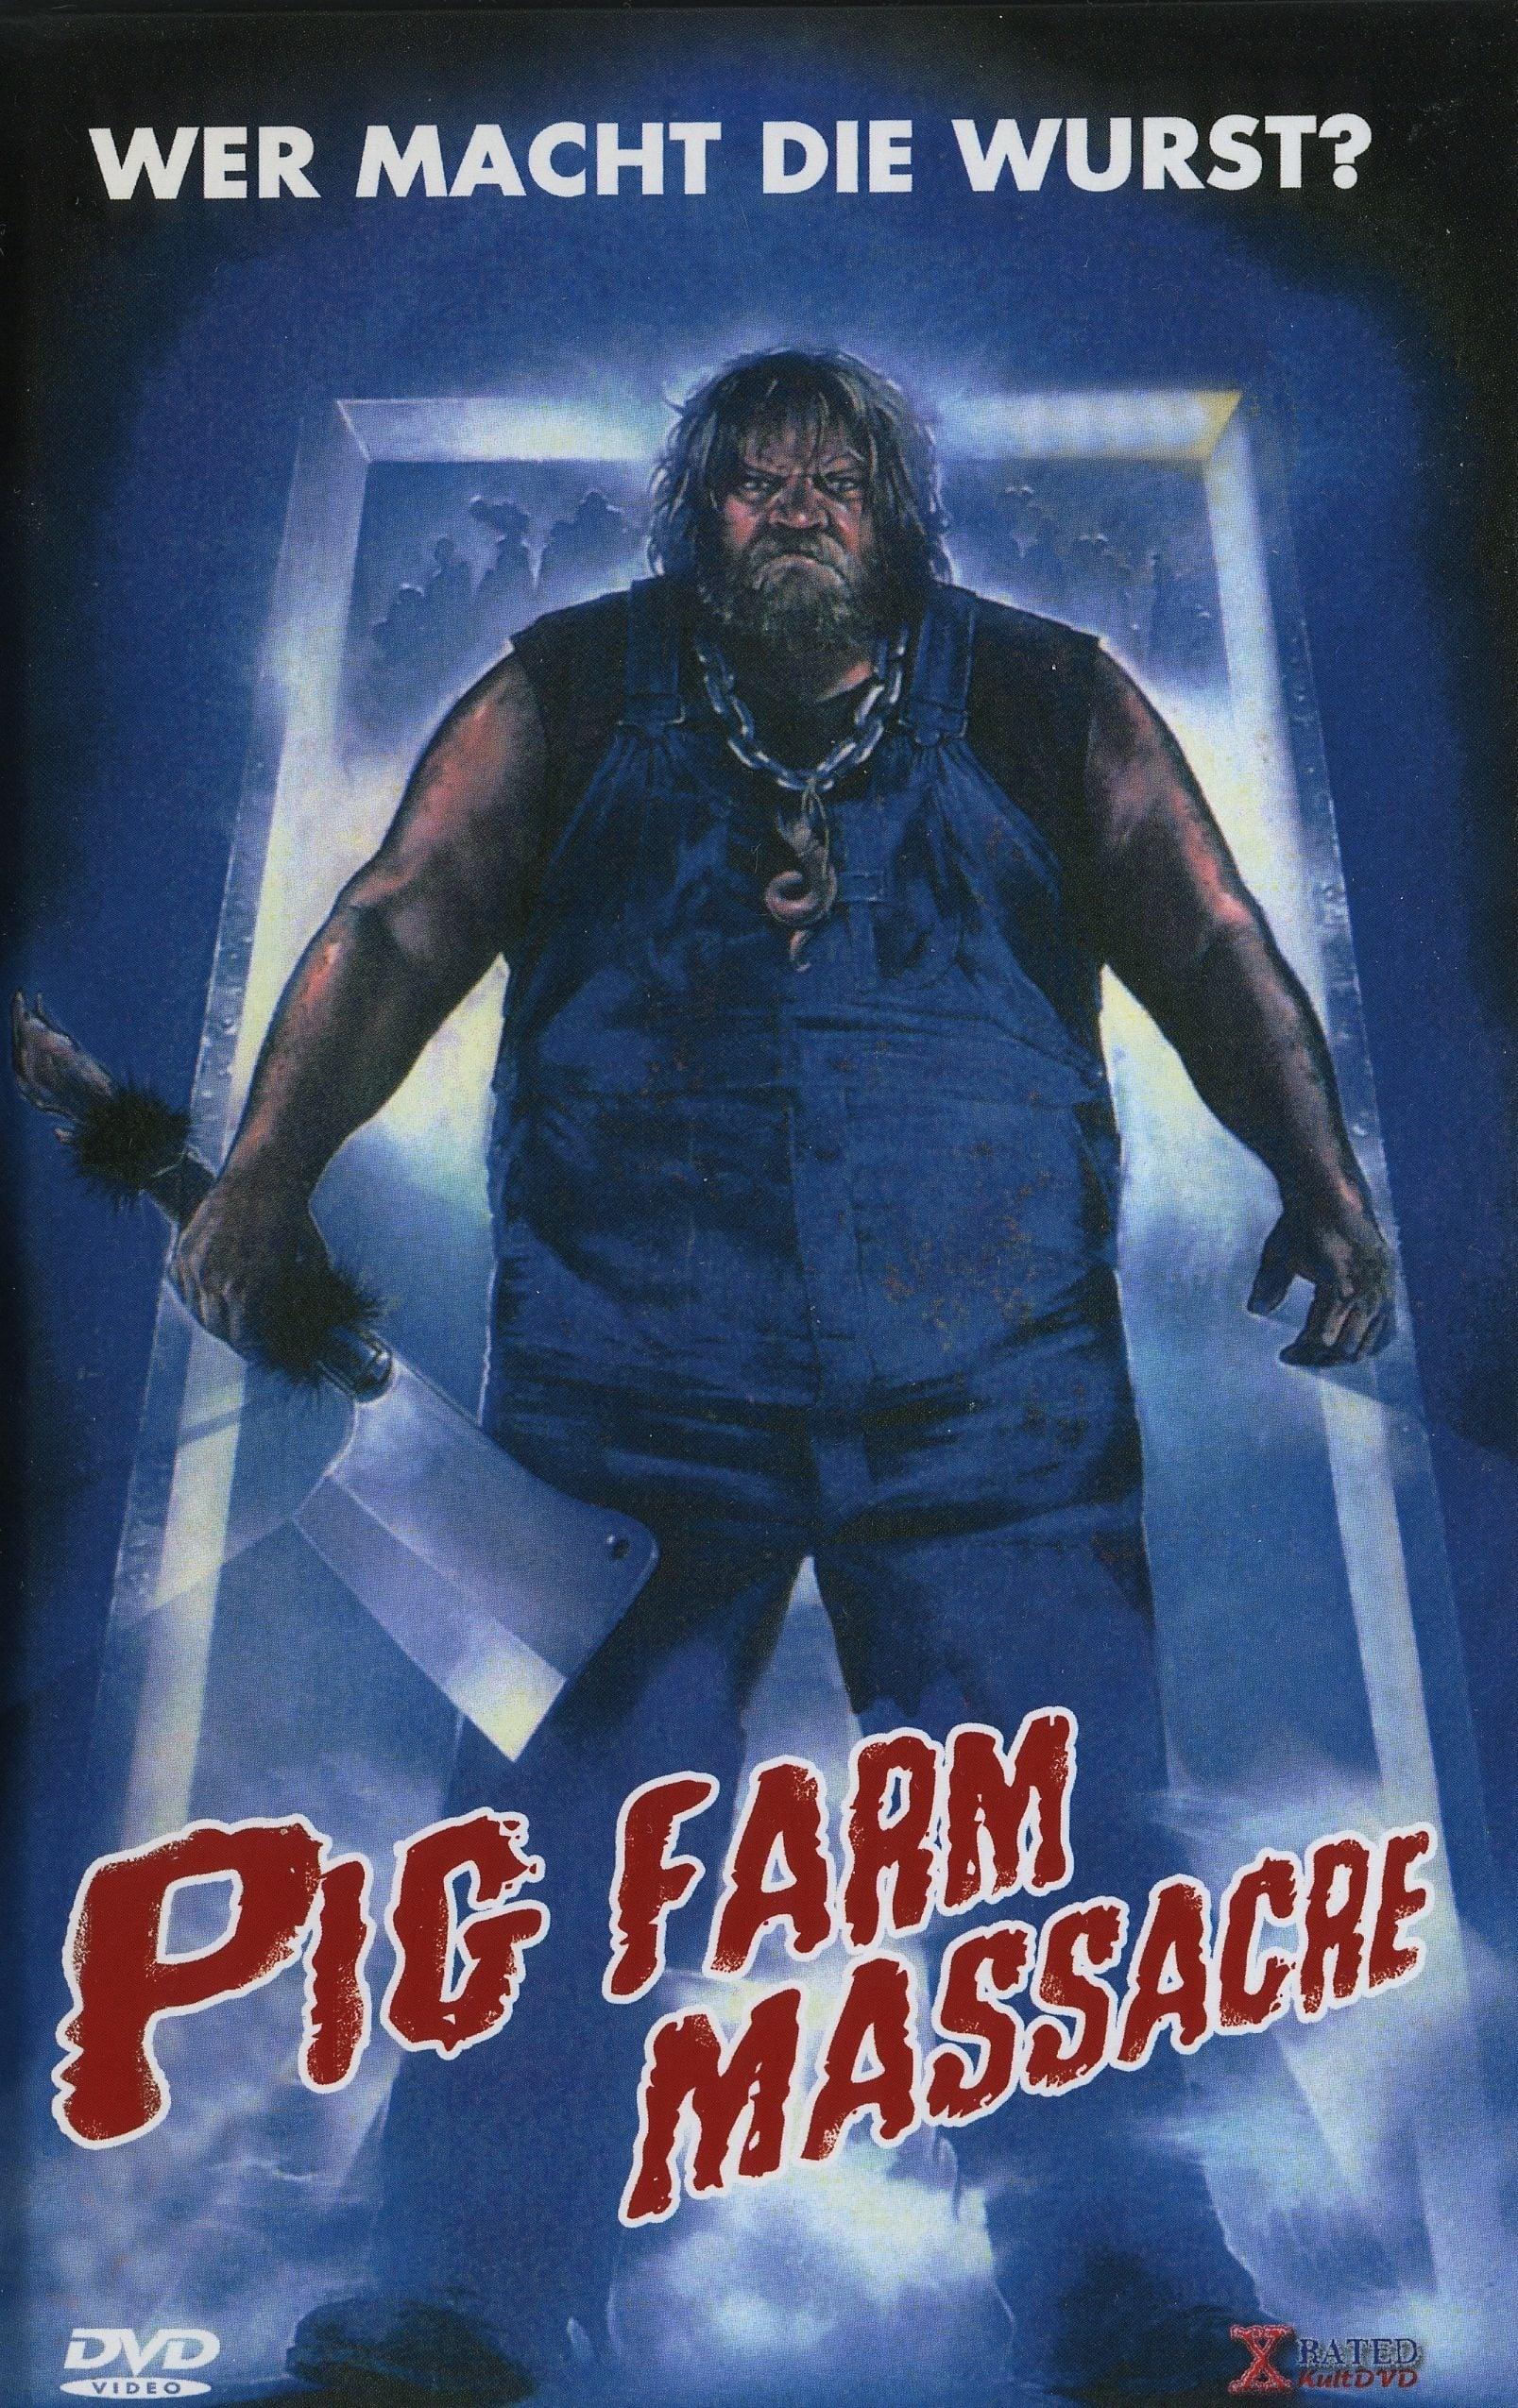 Slaughterhouse poster